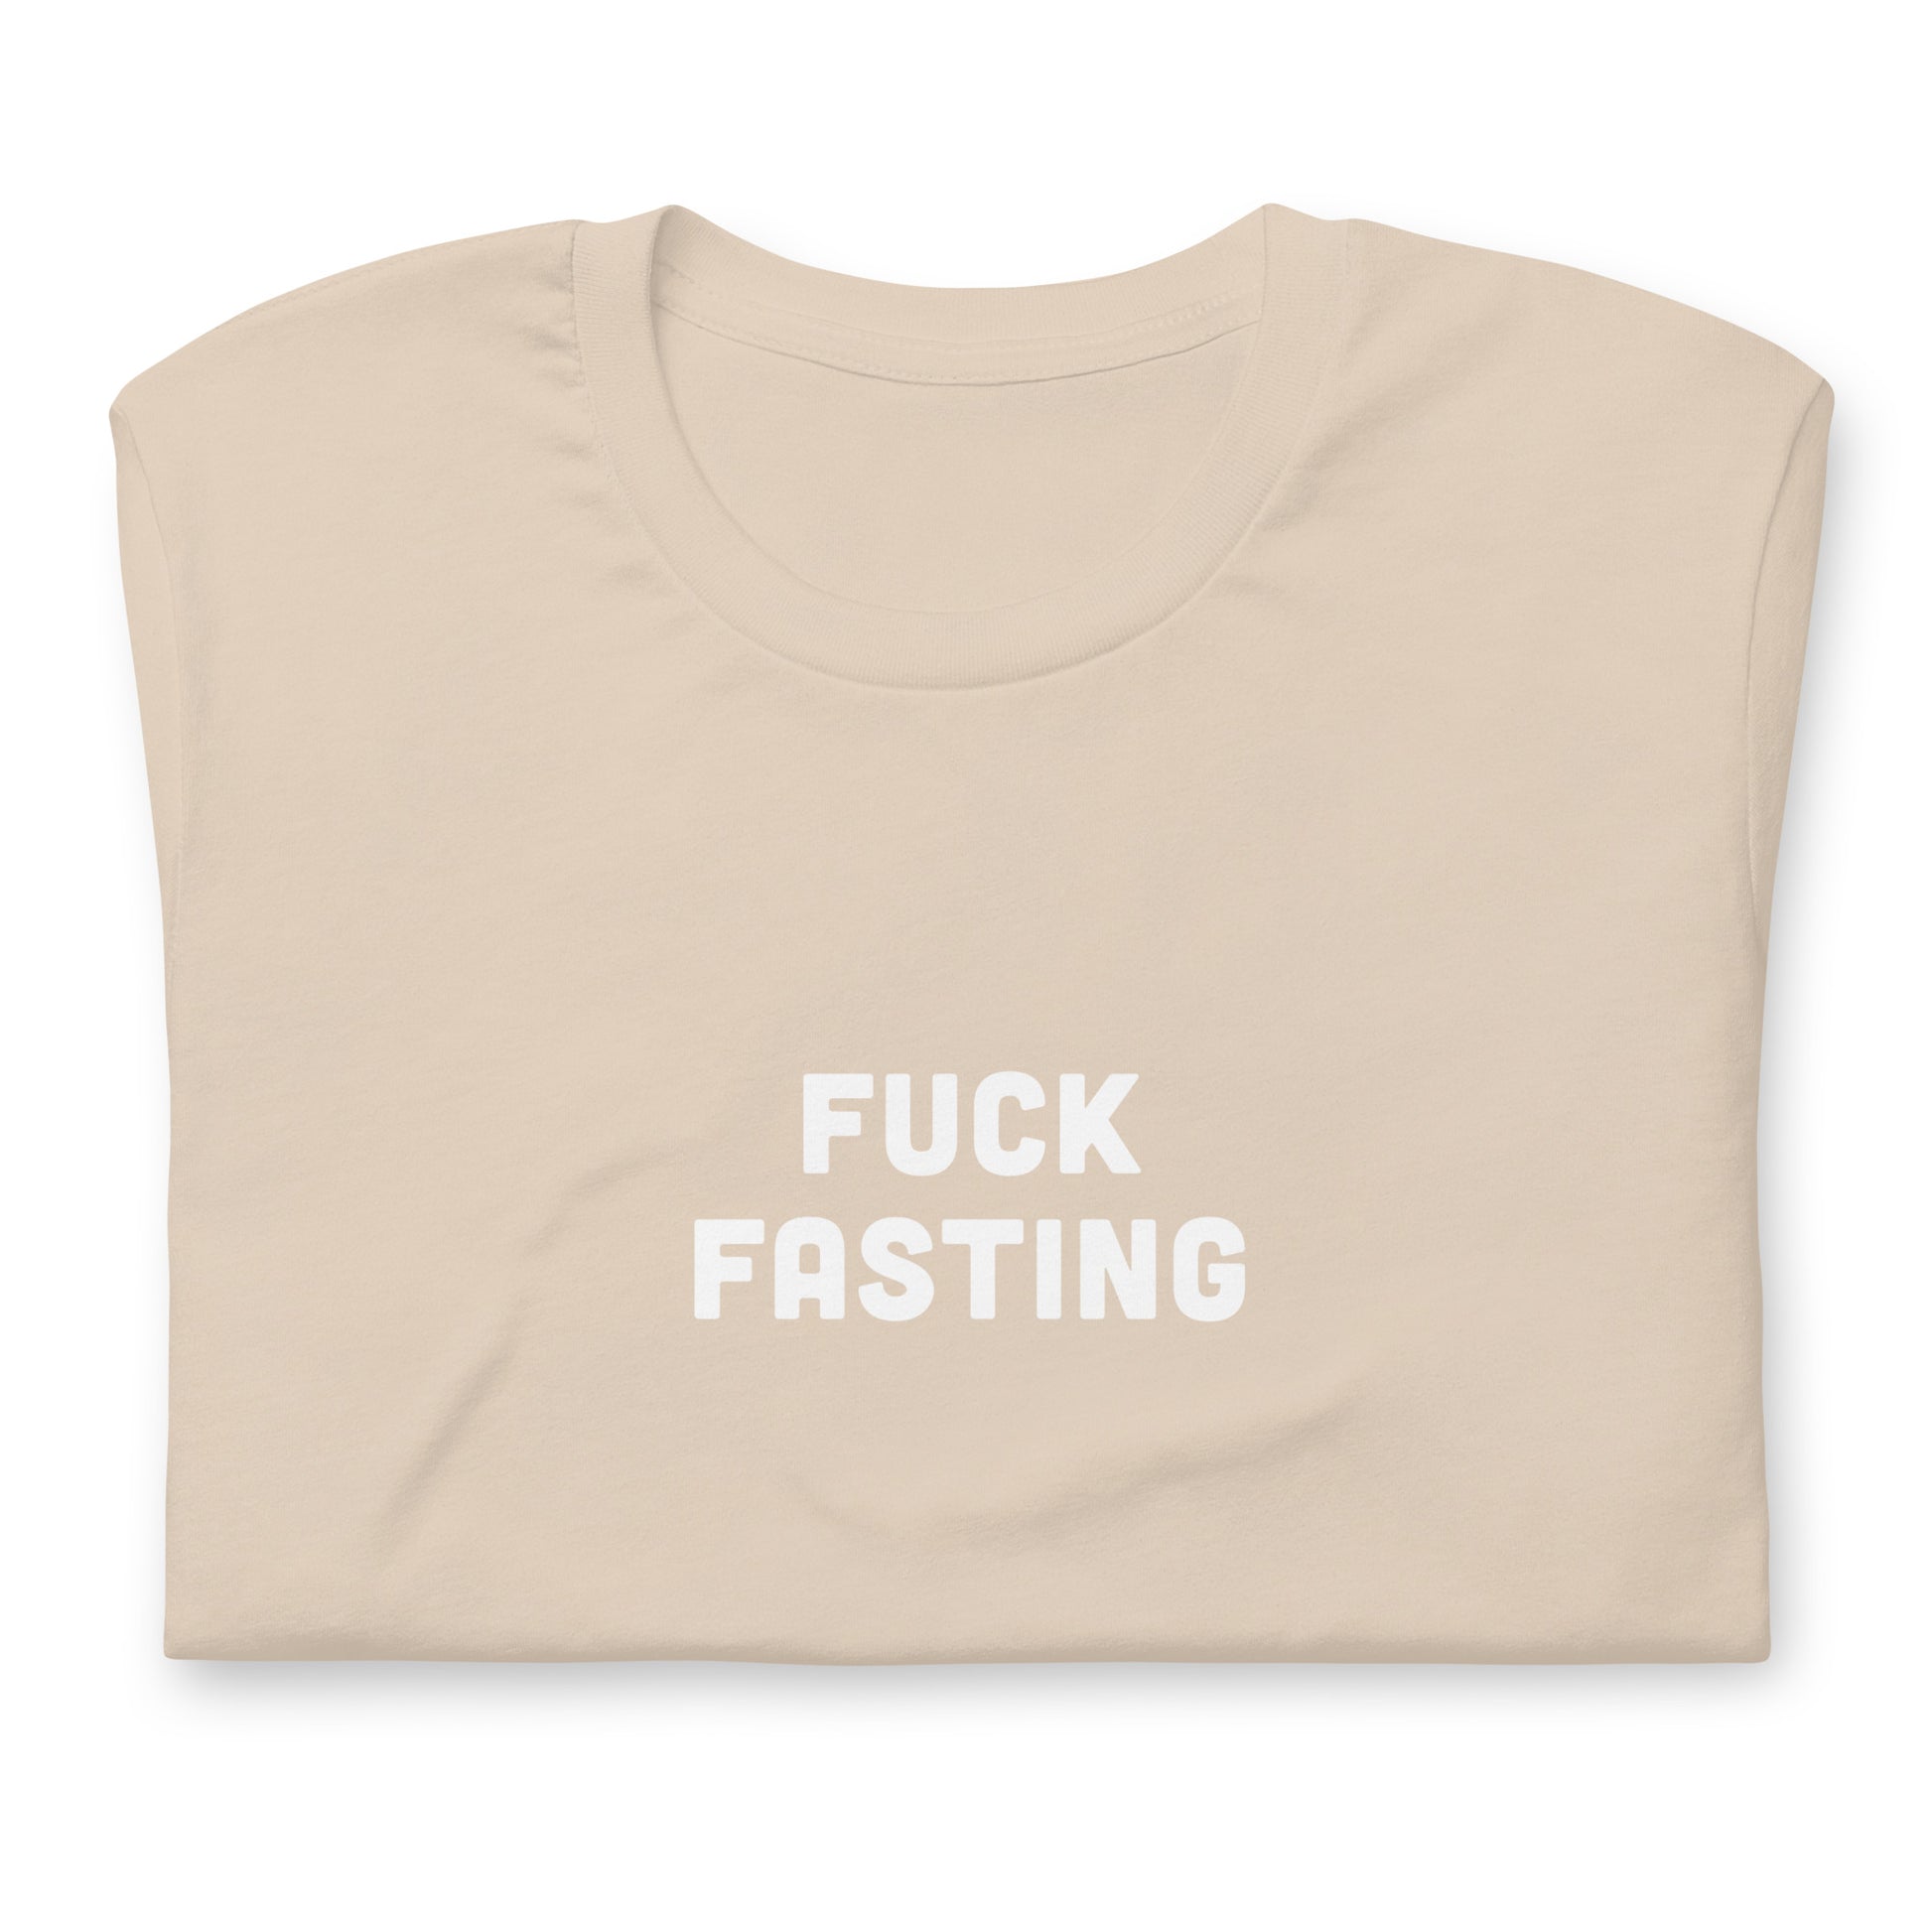 Fuck Fasting T-Shirt Size L Color Asphalt